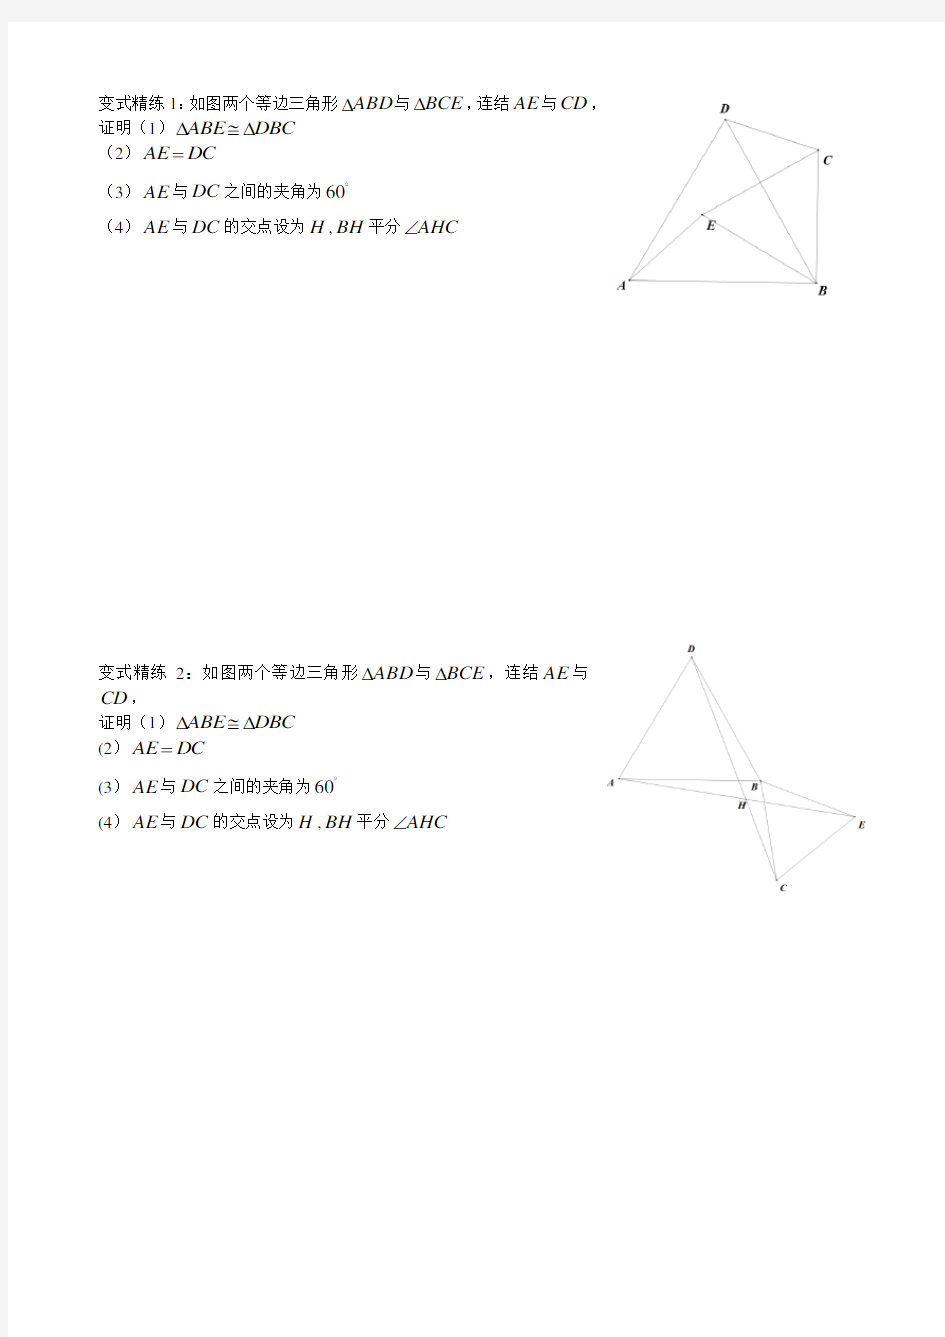 全等三角形中重要几何模型专题讲解(手拉手模型、截长补短、中线倍长)